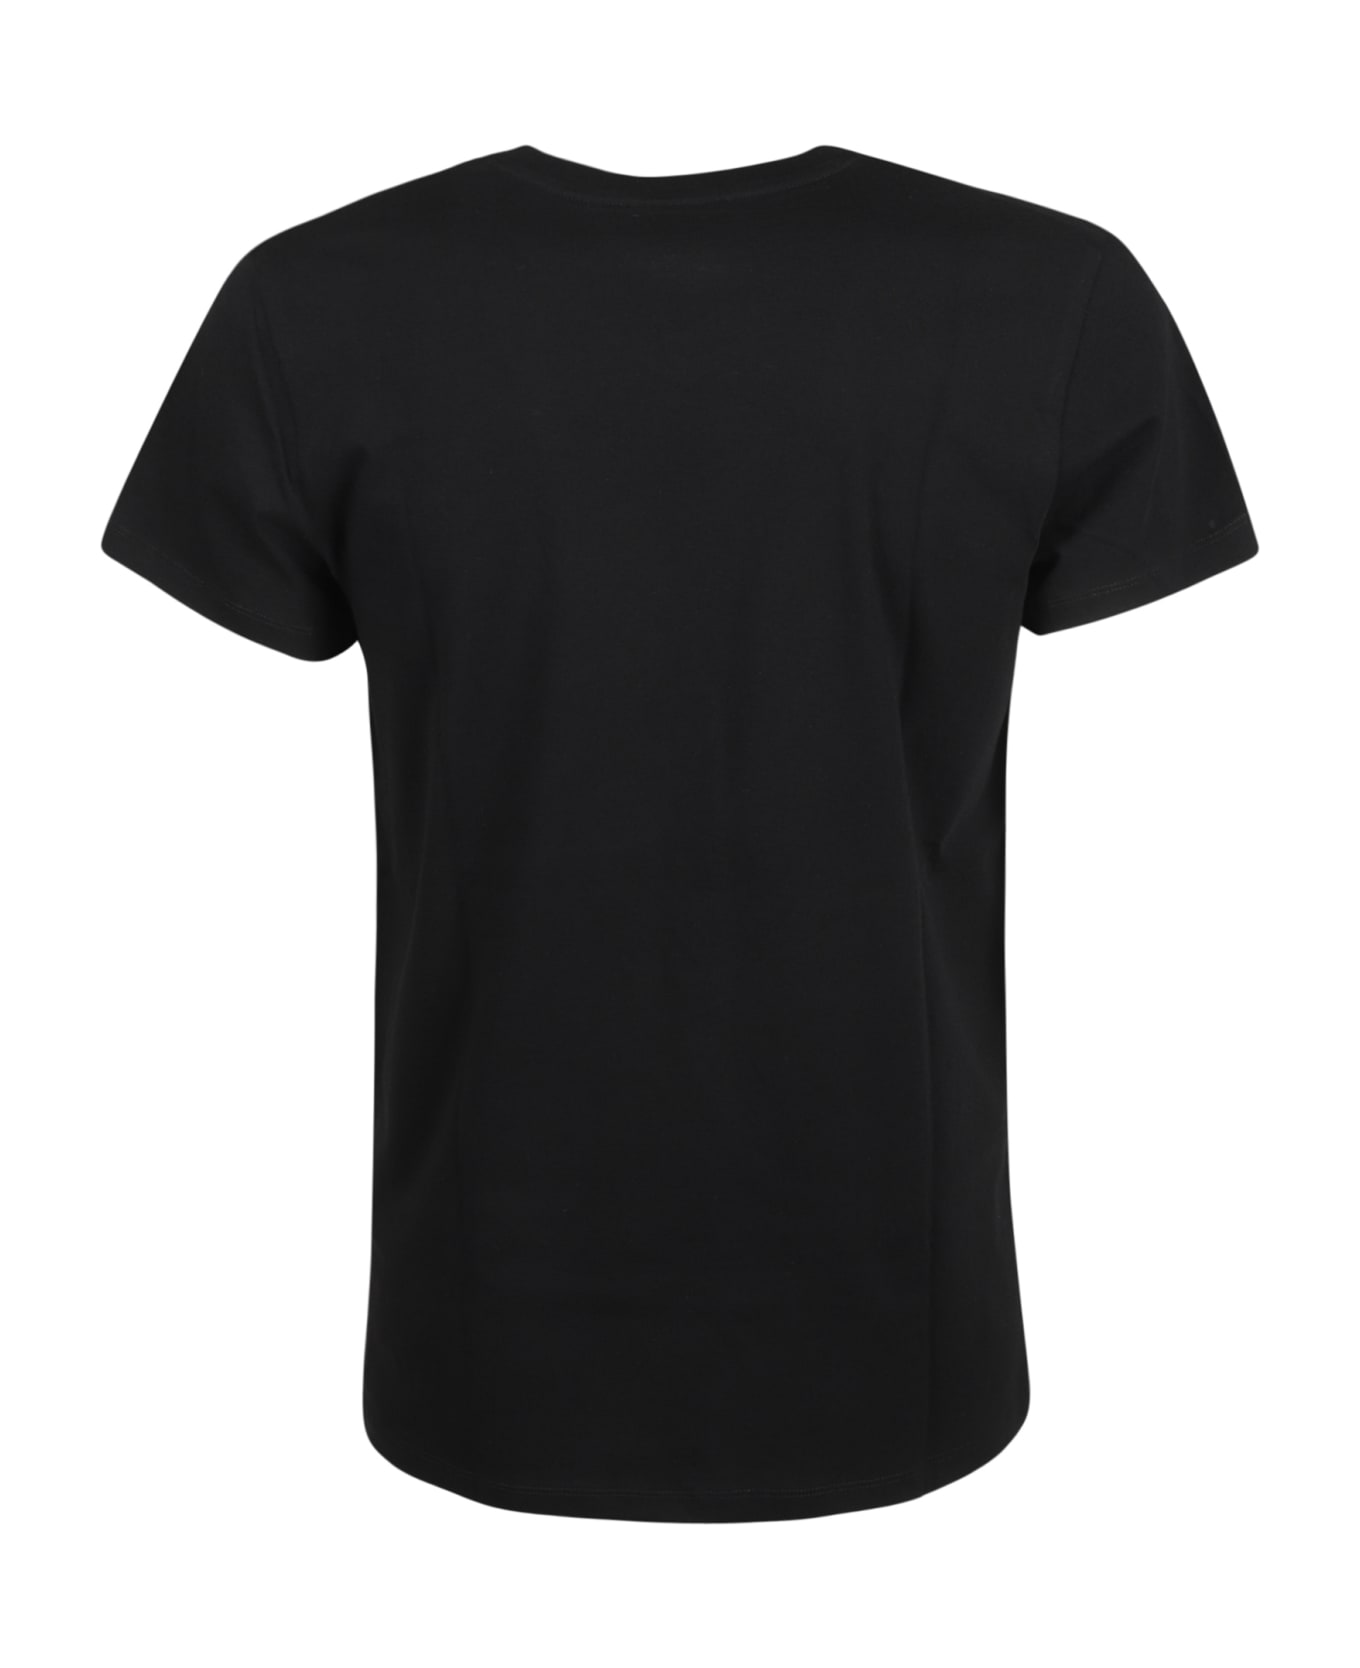 Jil Sander V-neck T-shirt - Black